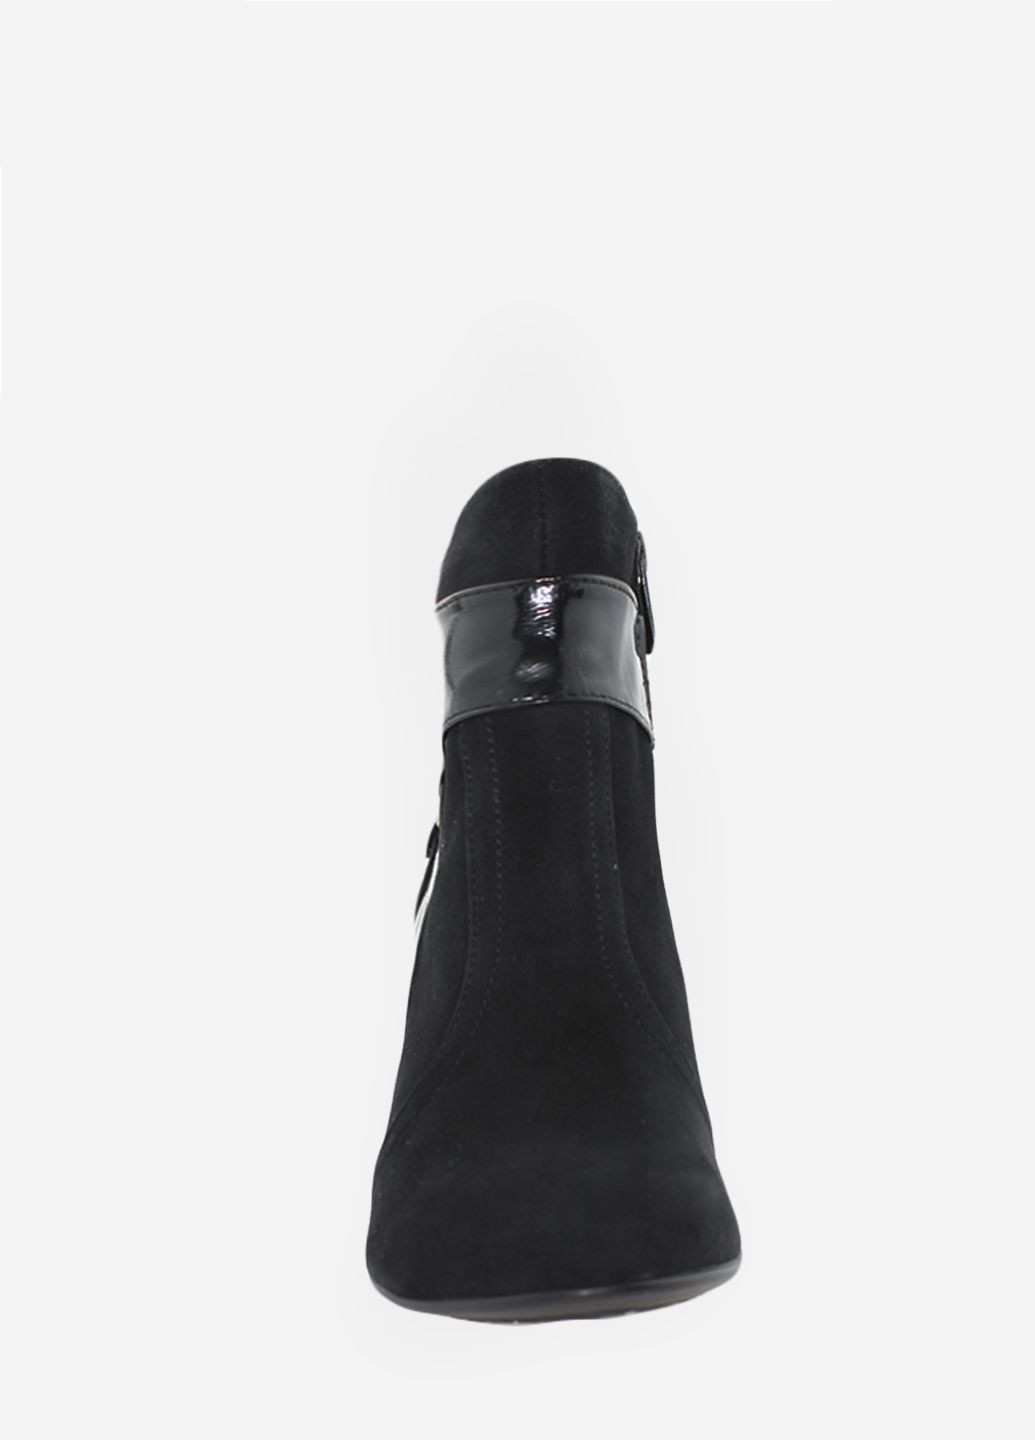 Осенние ботинки rk75-11 черный Kseniya из натуральной замши